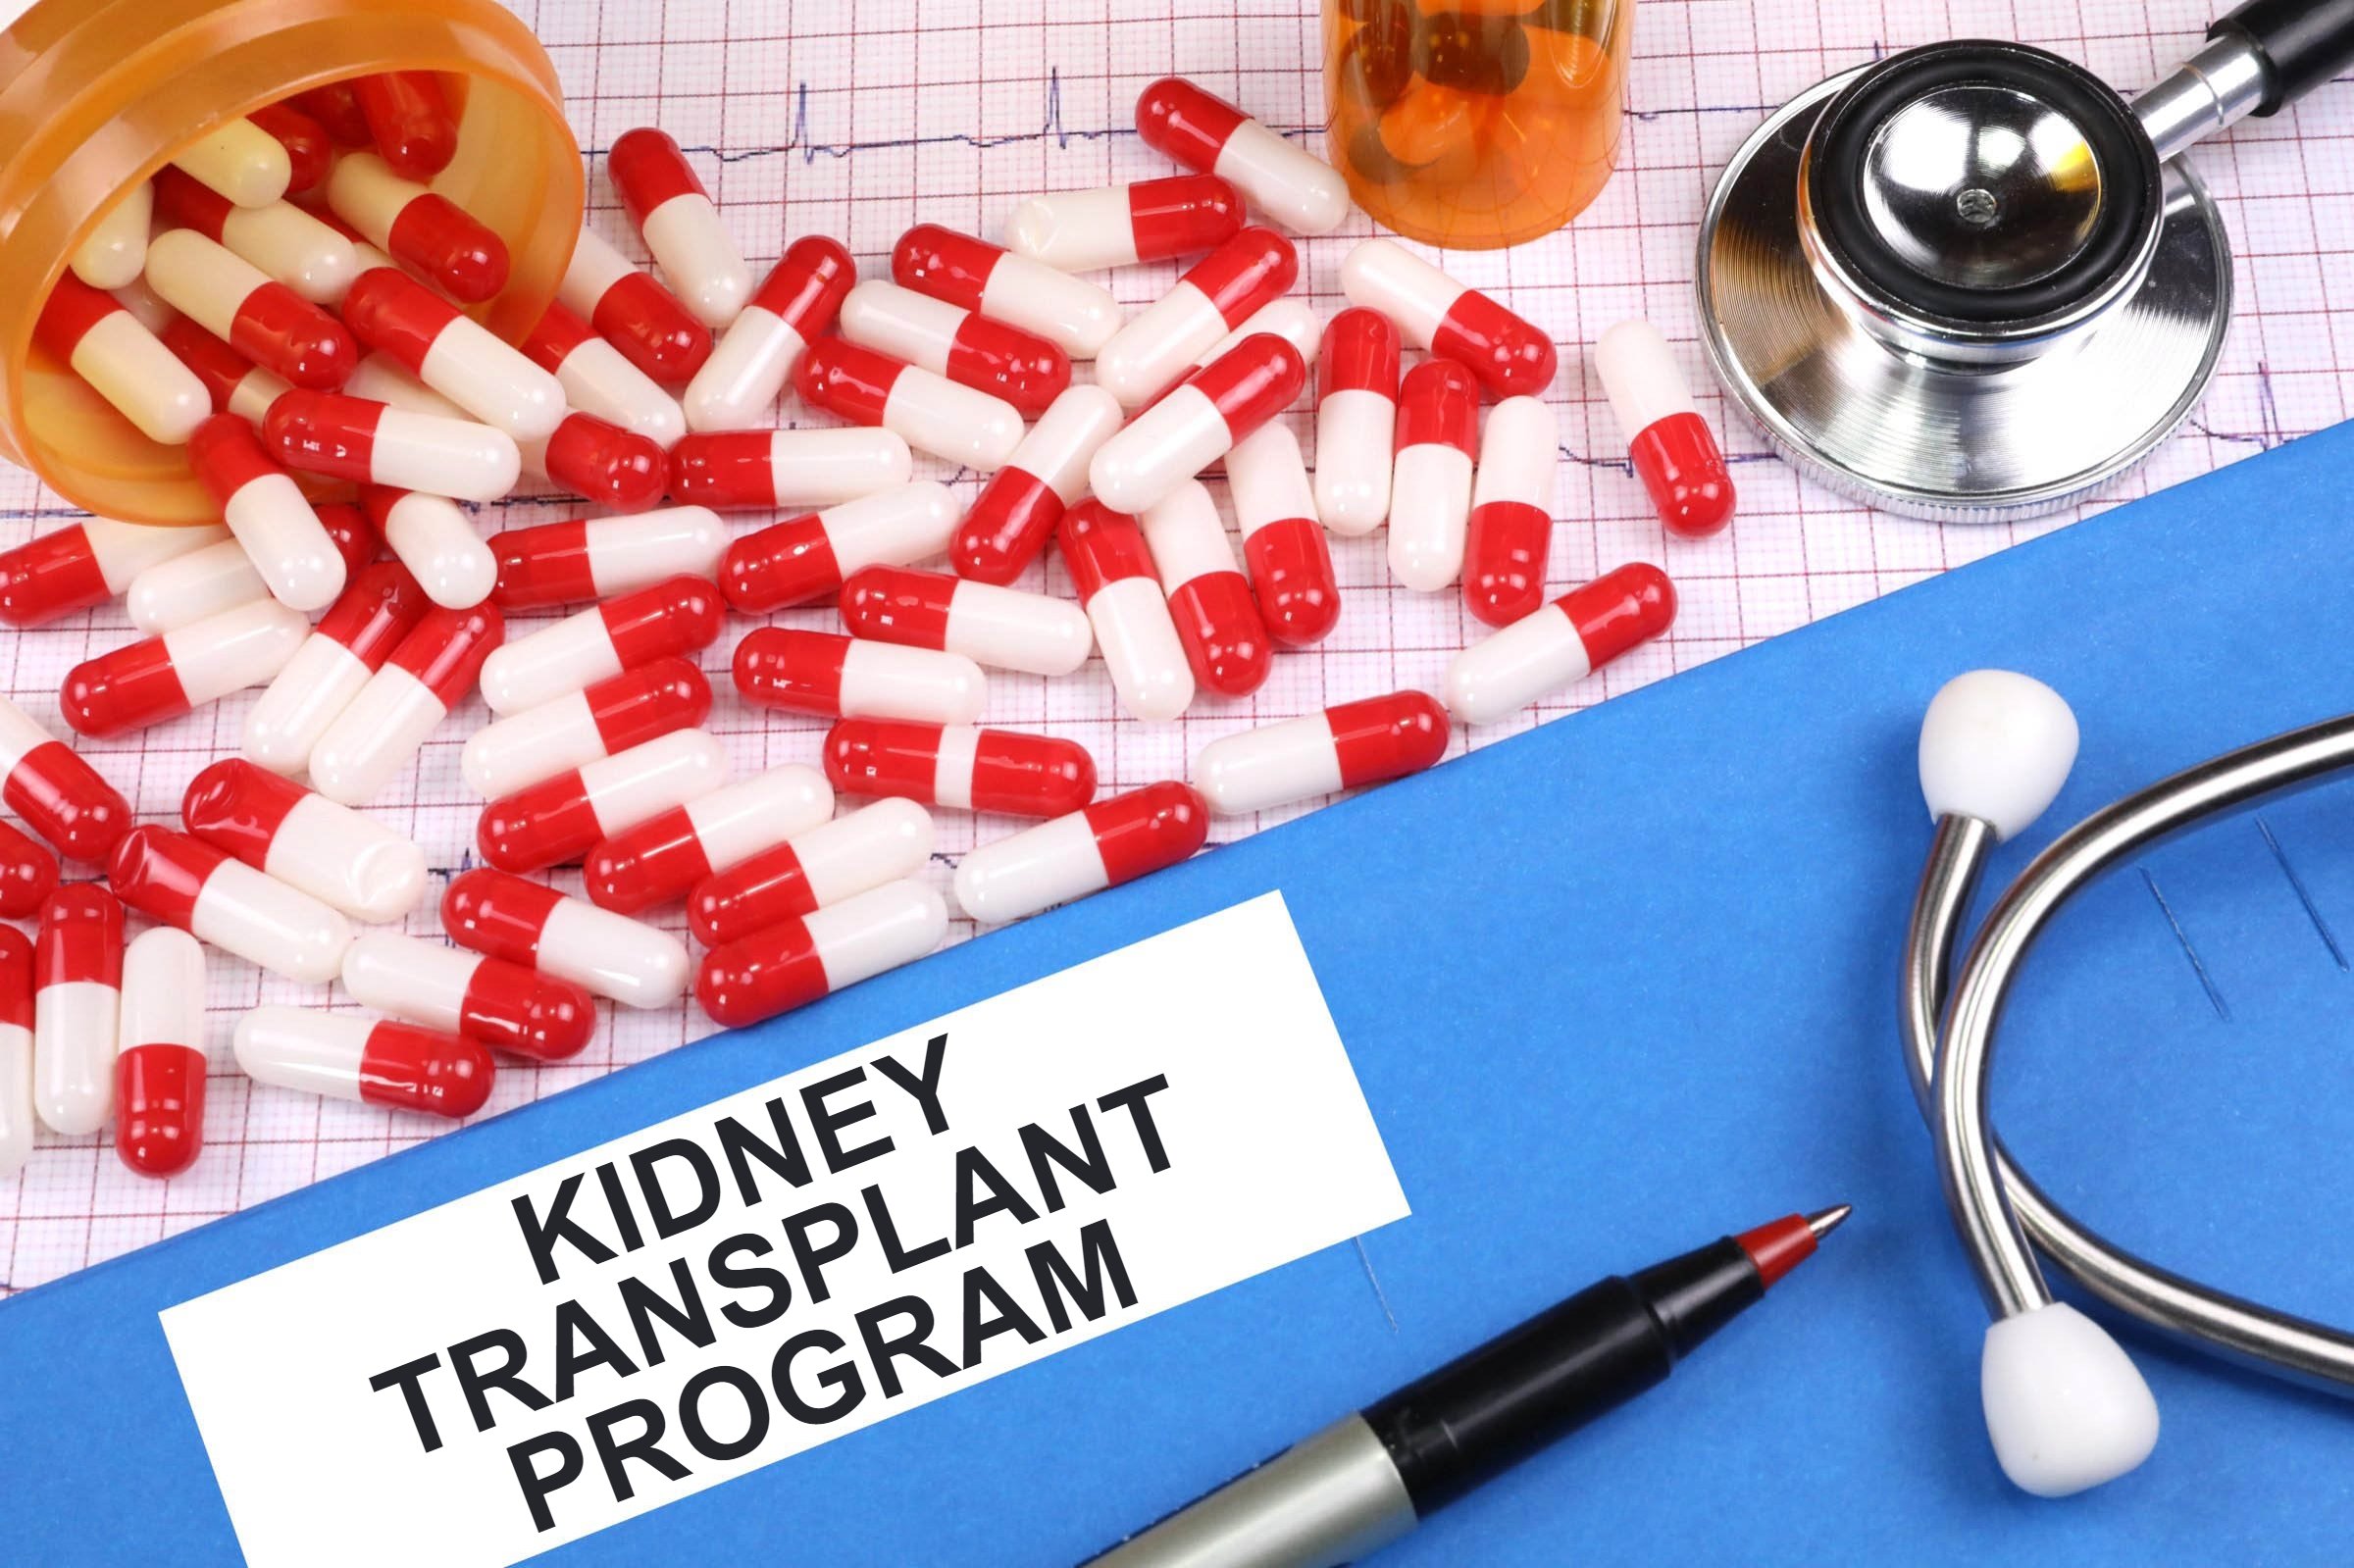 Kidney Transplant Program